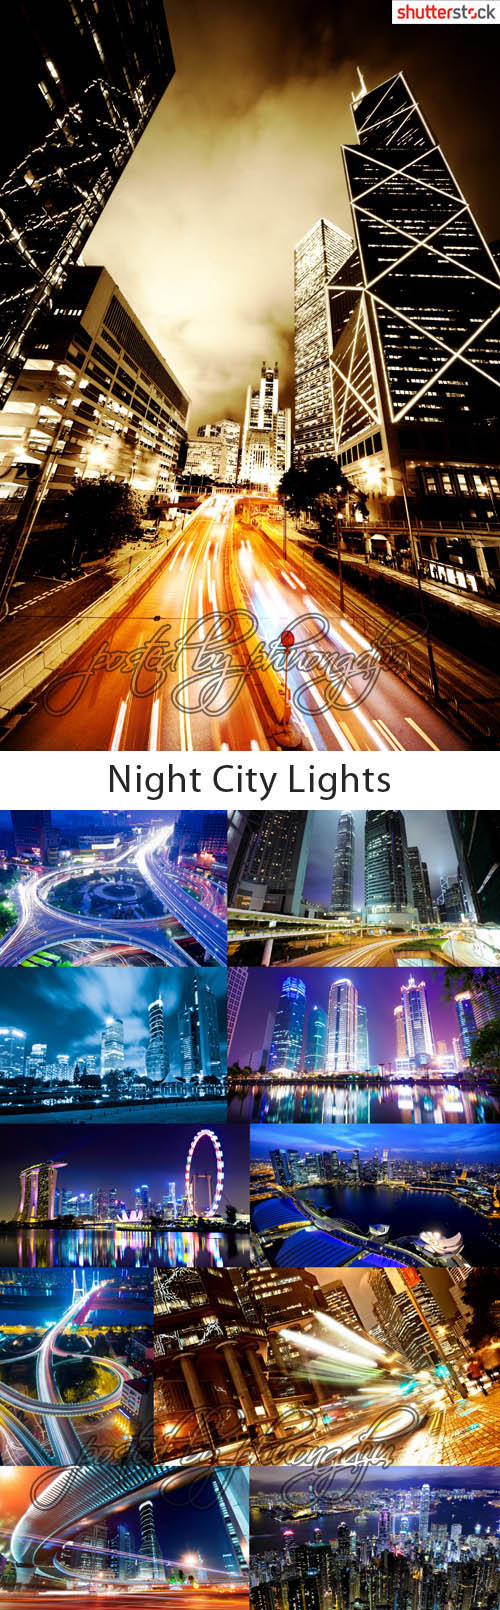 Night City Lights - Stock Photo  V0l.1